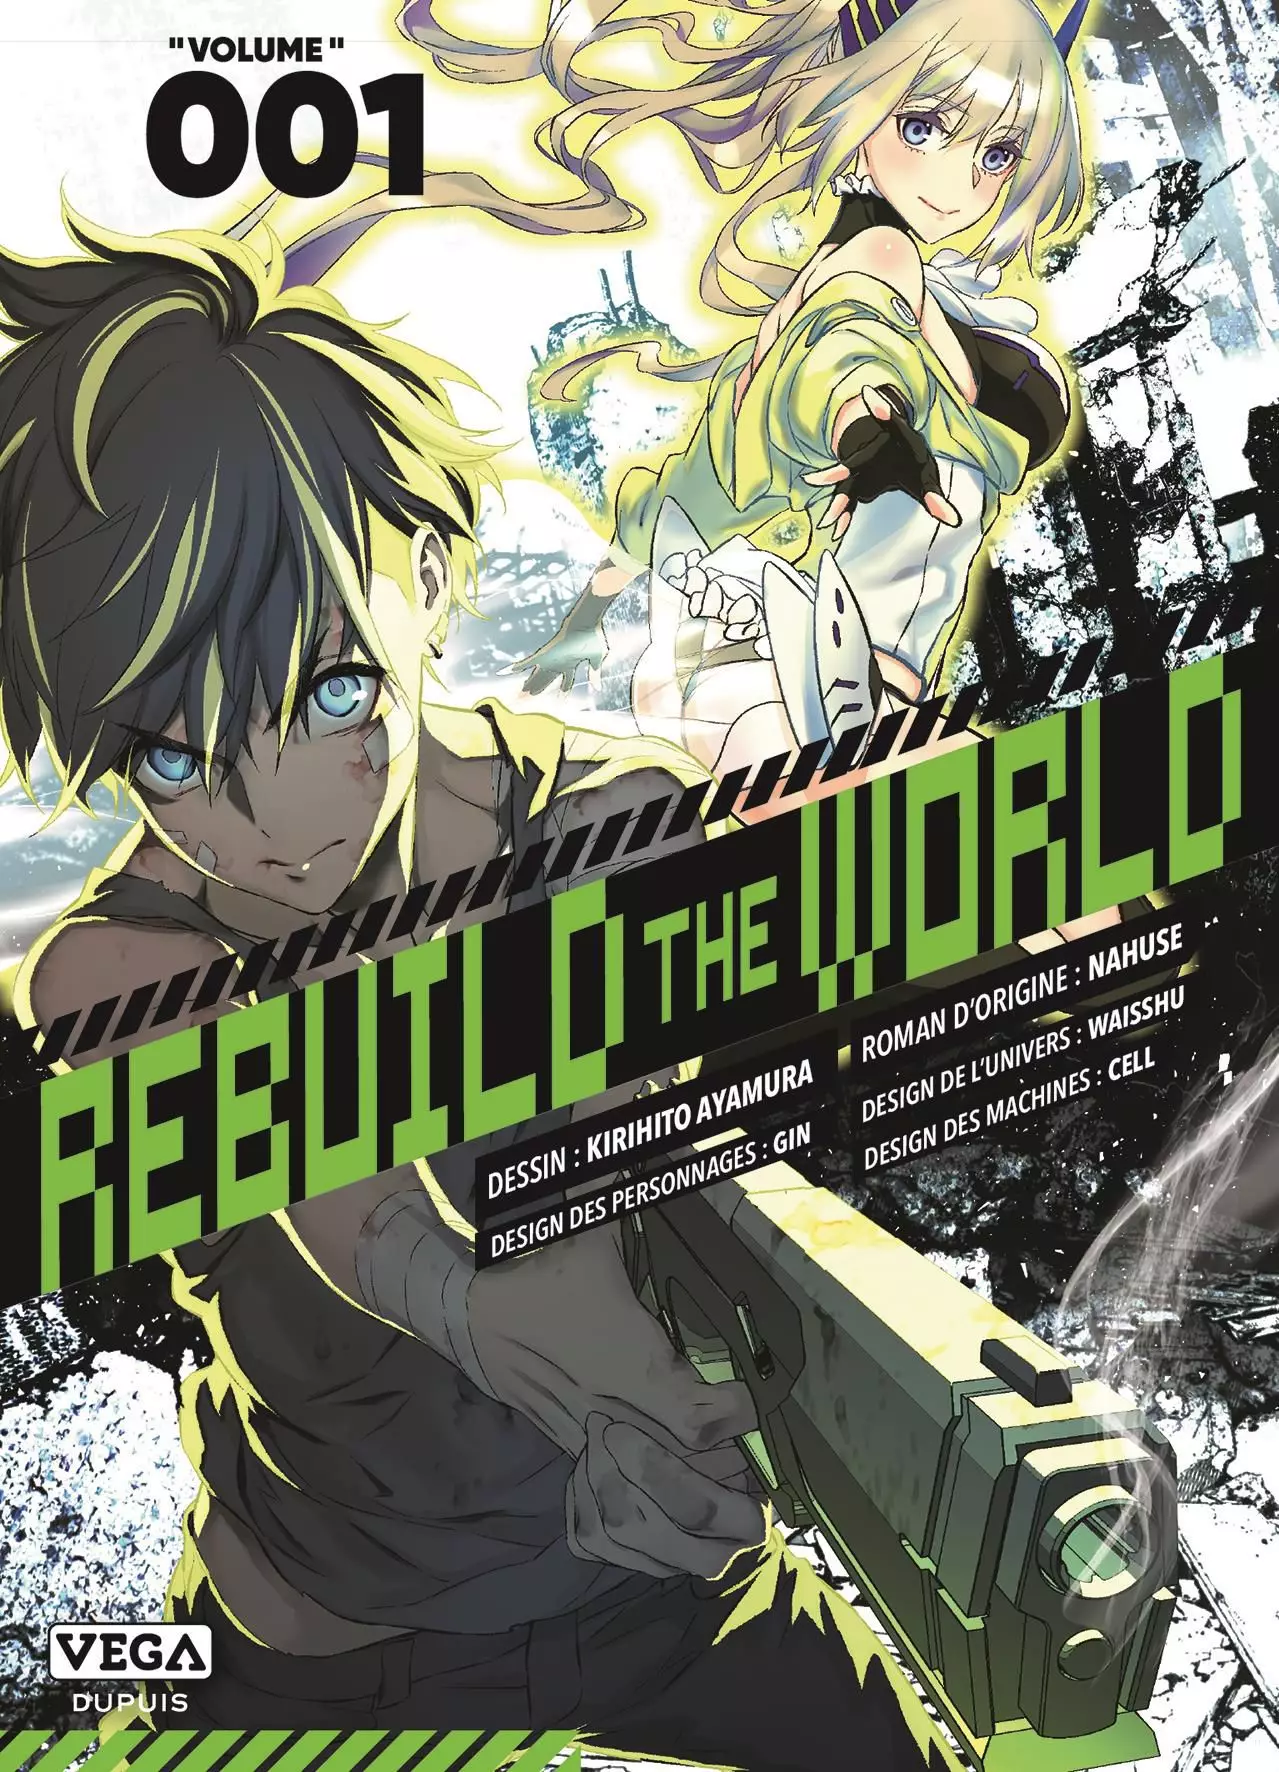 vidéo manga - Rebuild The World